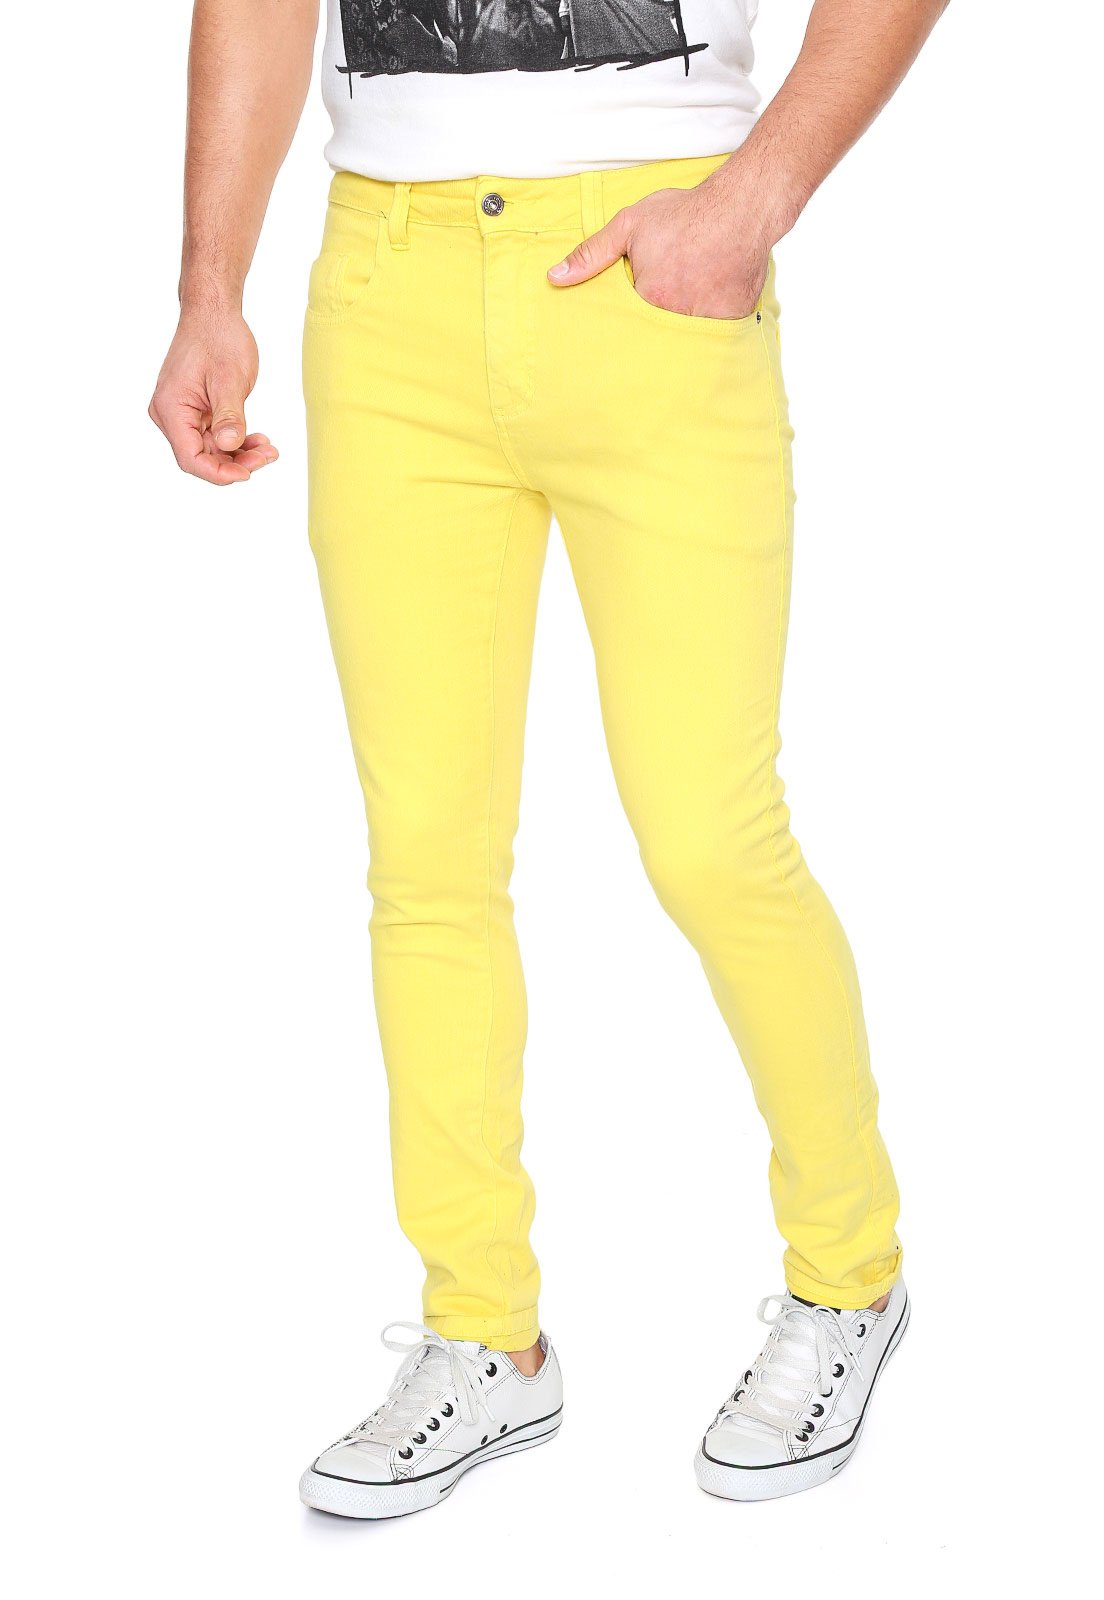 calça amarela masculina